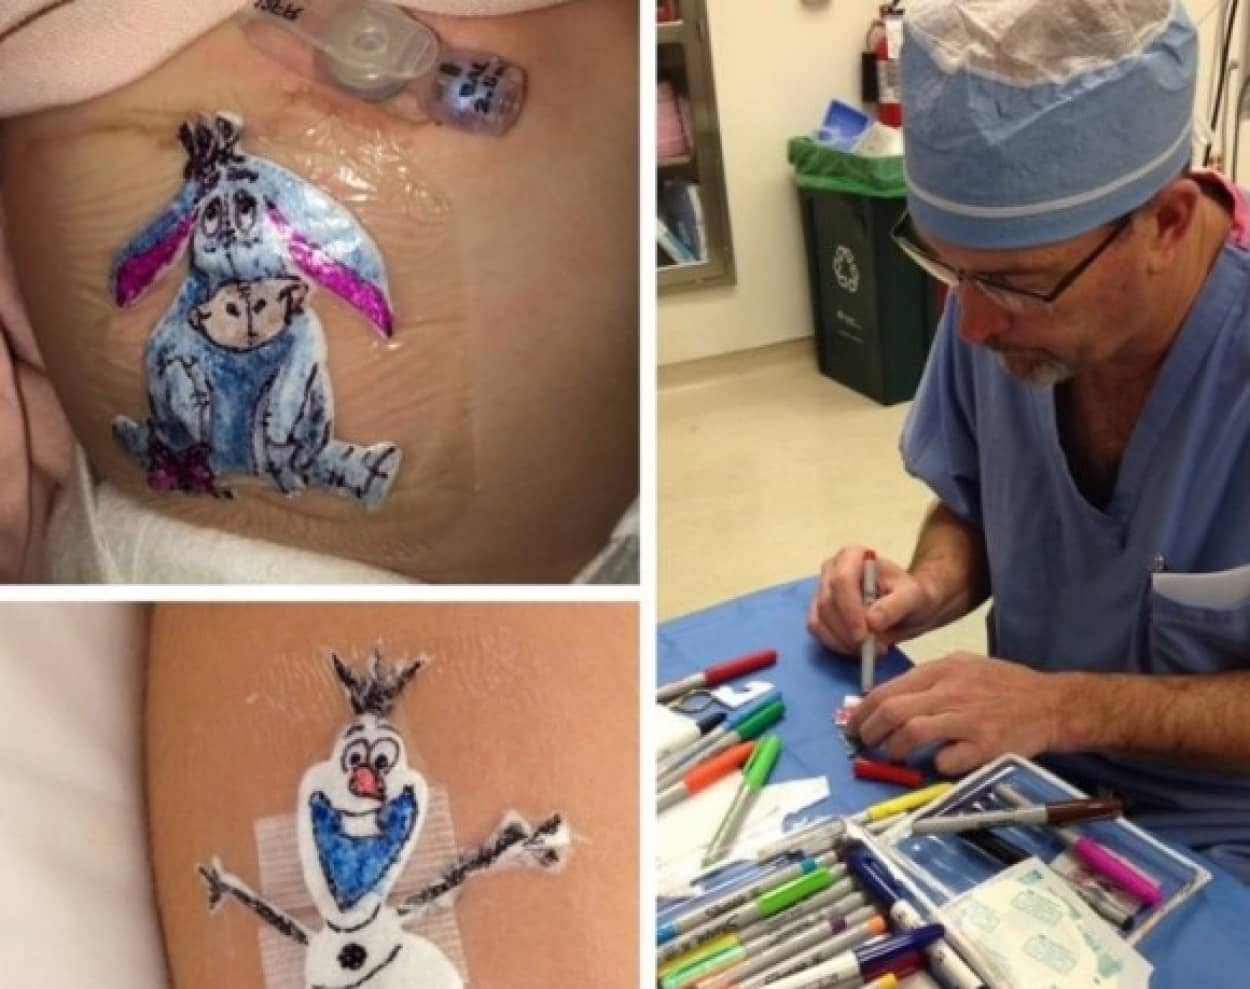 手術した子供たちを元気づけるため 治療後の患部に手描きのイラストパッチを付けてあげる医師 アメリカ ニコニコニュース